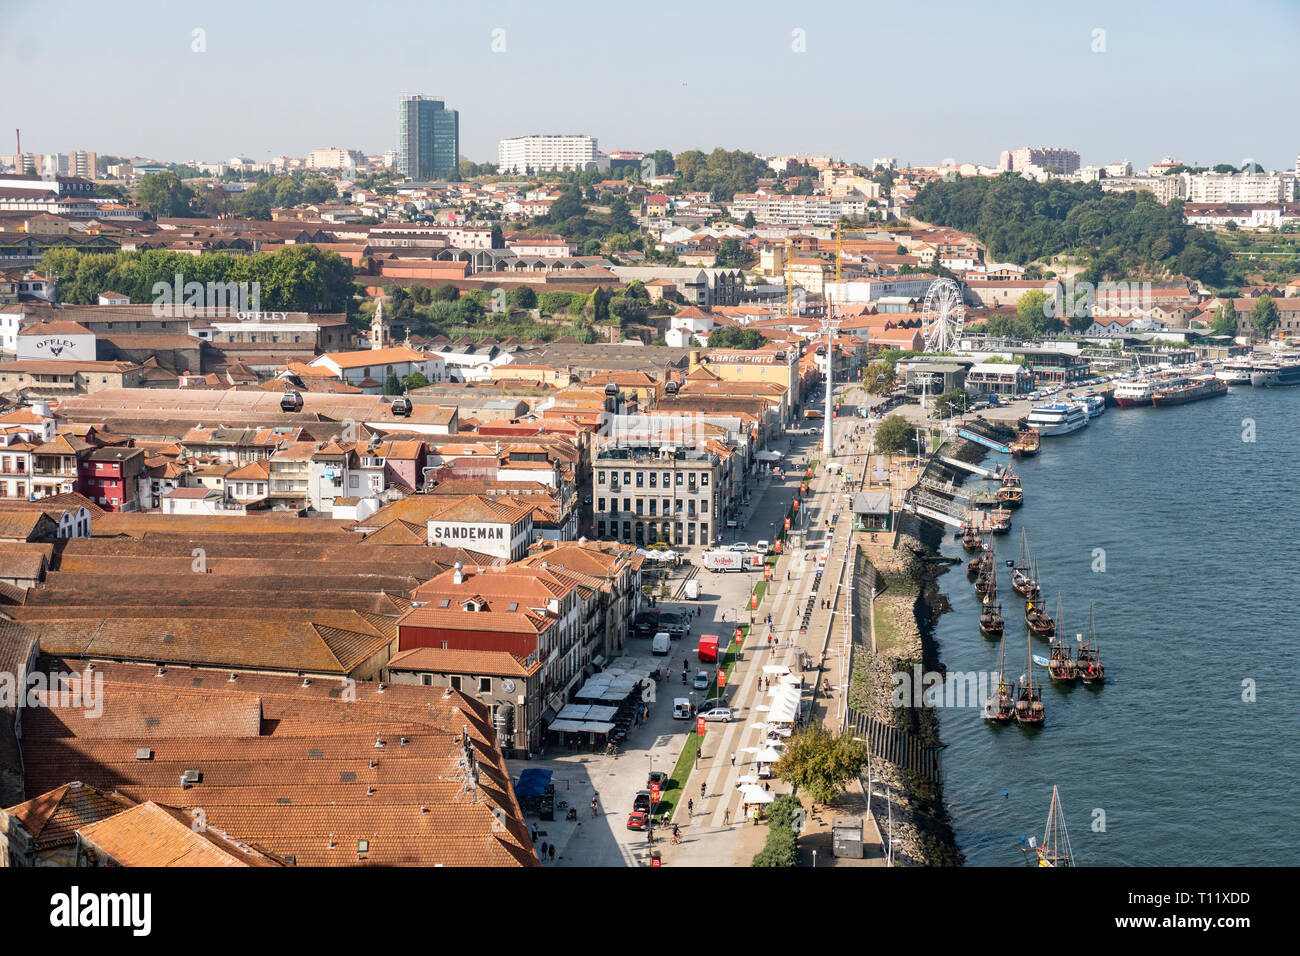 Vilanova de Gaia cityscape on sunny day. Porto Portugal Stock Photo